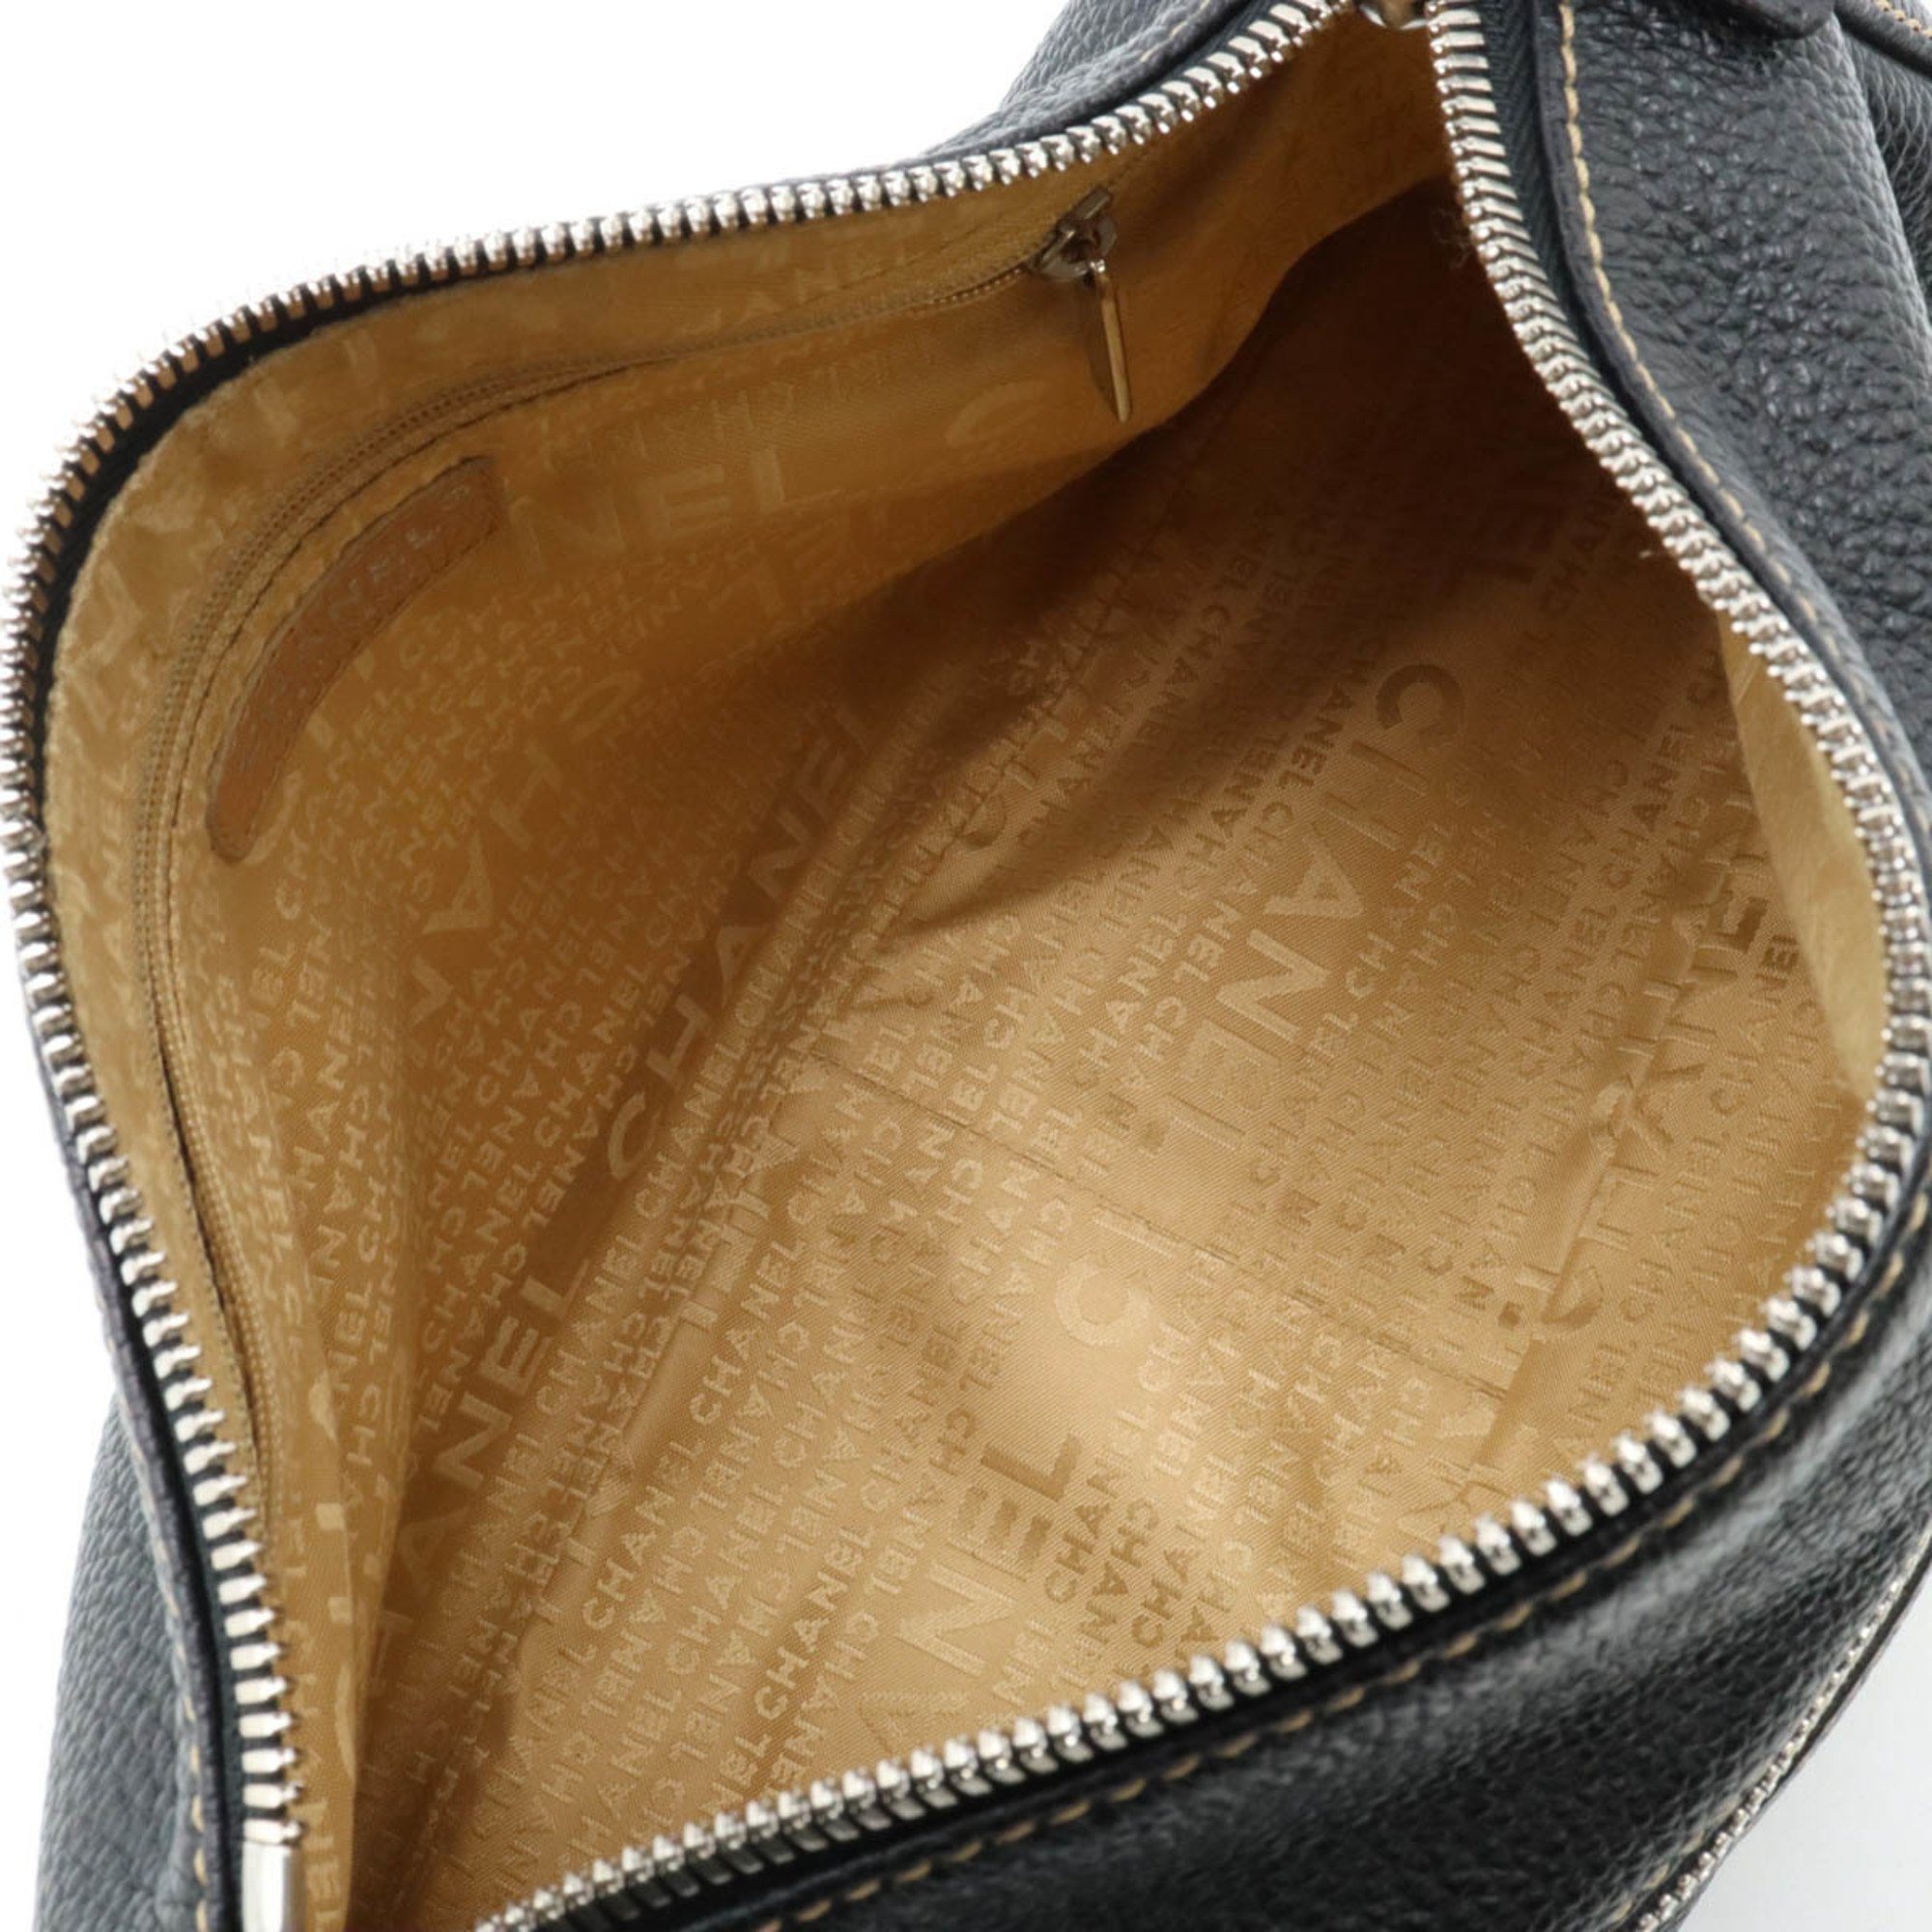 CHANEL Shoulder Bag Tassel Leather Black